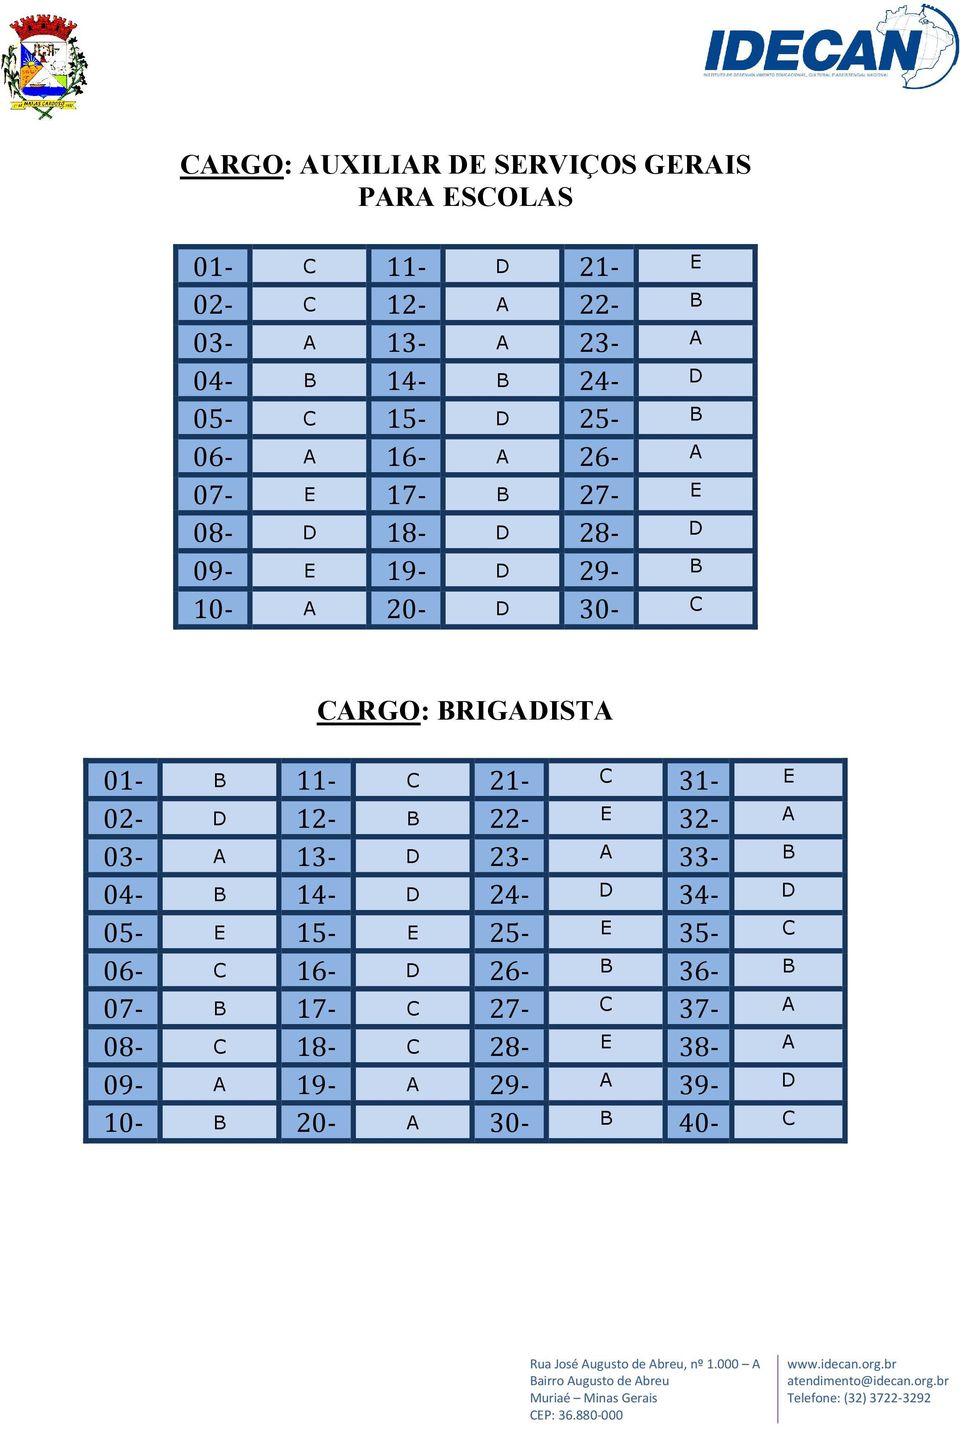 BRIGADISTA 01- B 11- C 21- C 31- E 02- D 12- B 22- E 32- A 03- A 13- D 23- A 33- B 04- B 14- D 24- D 34- D 05- E 15- E